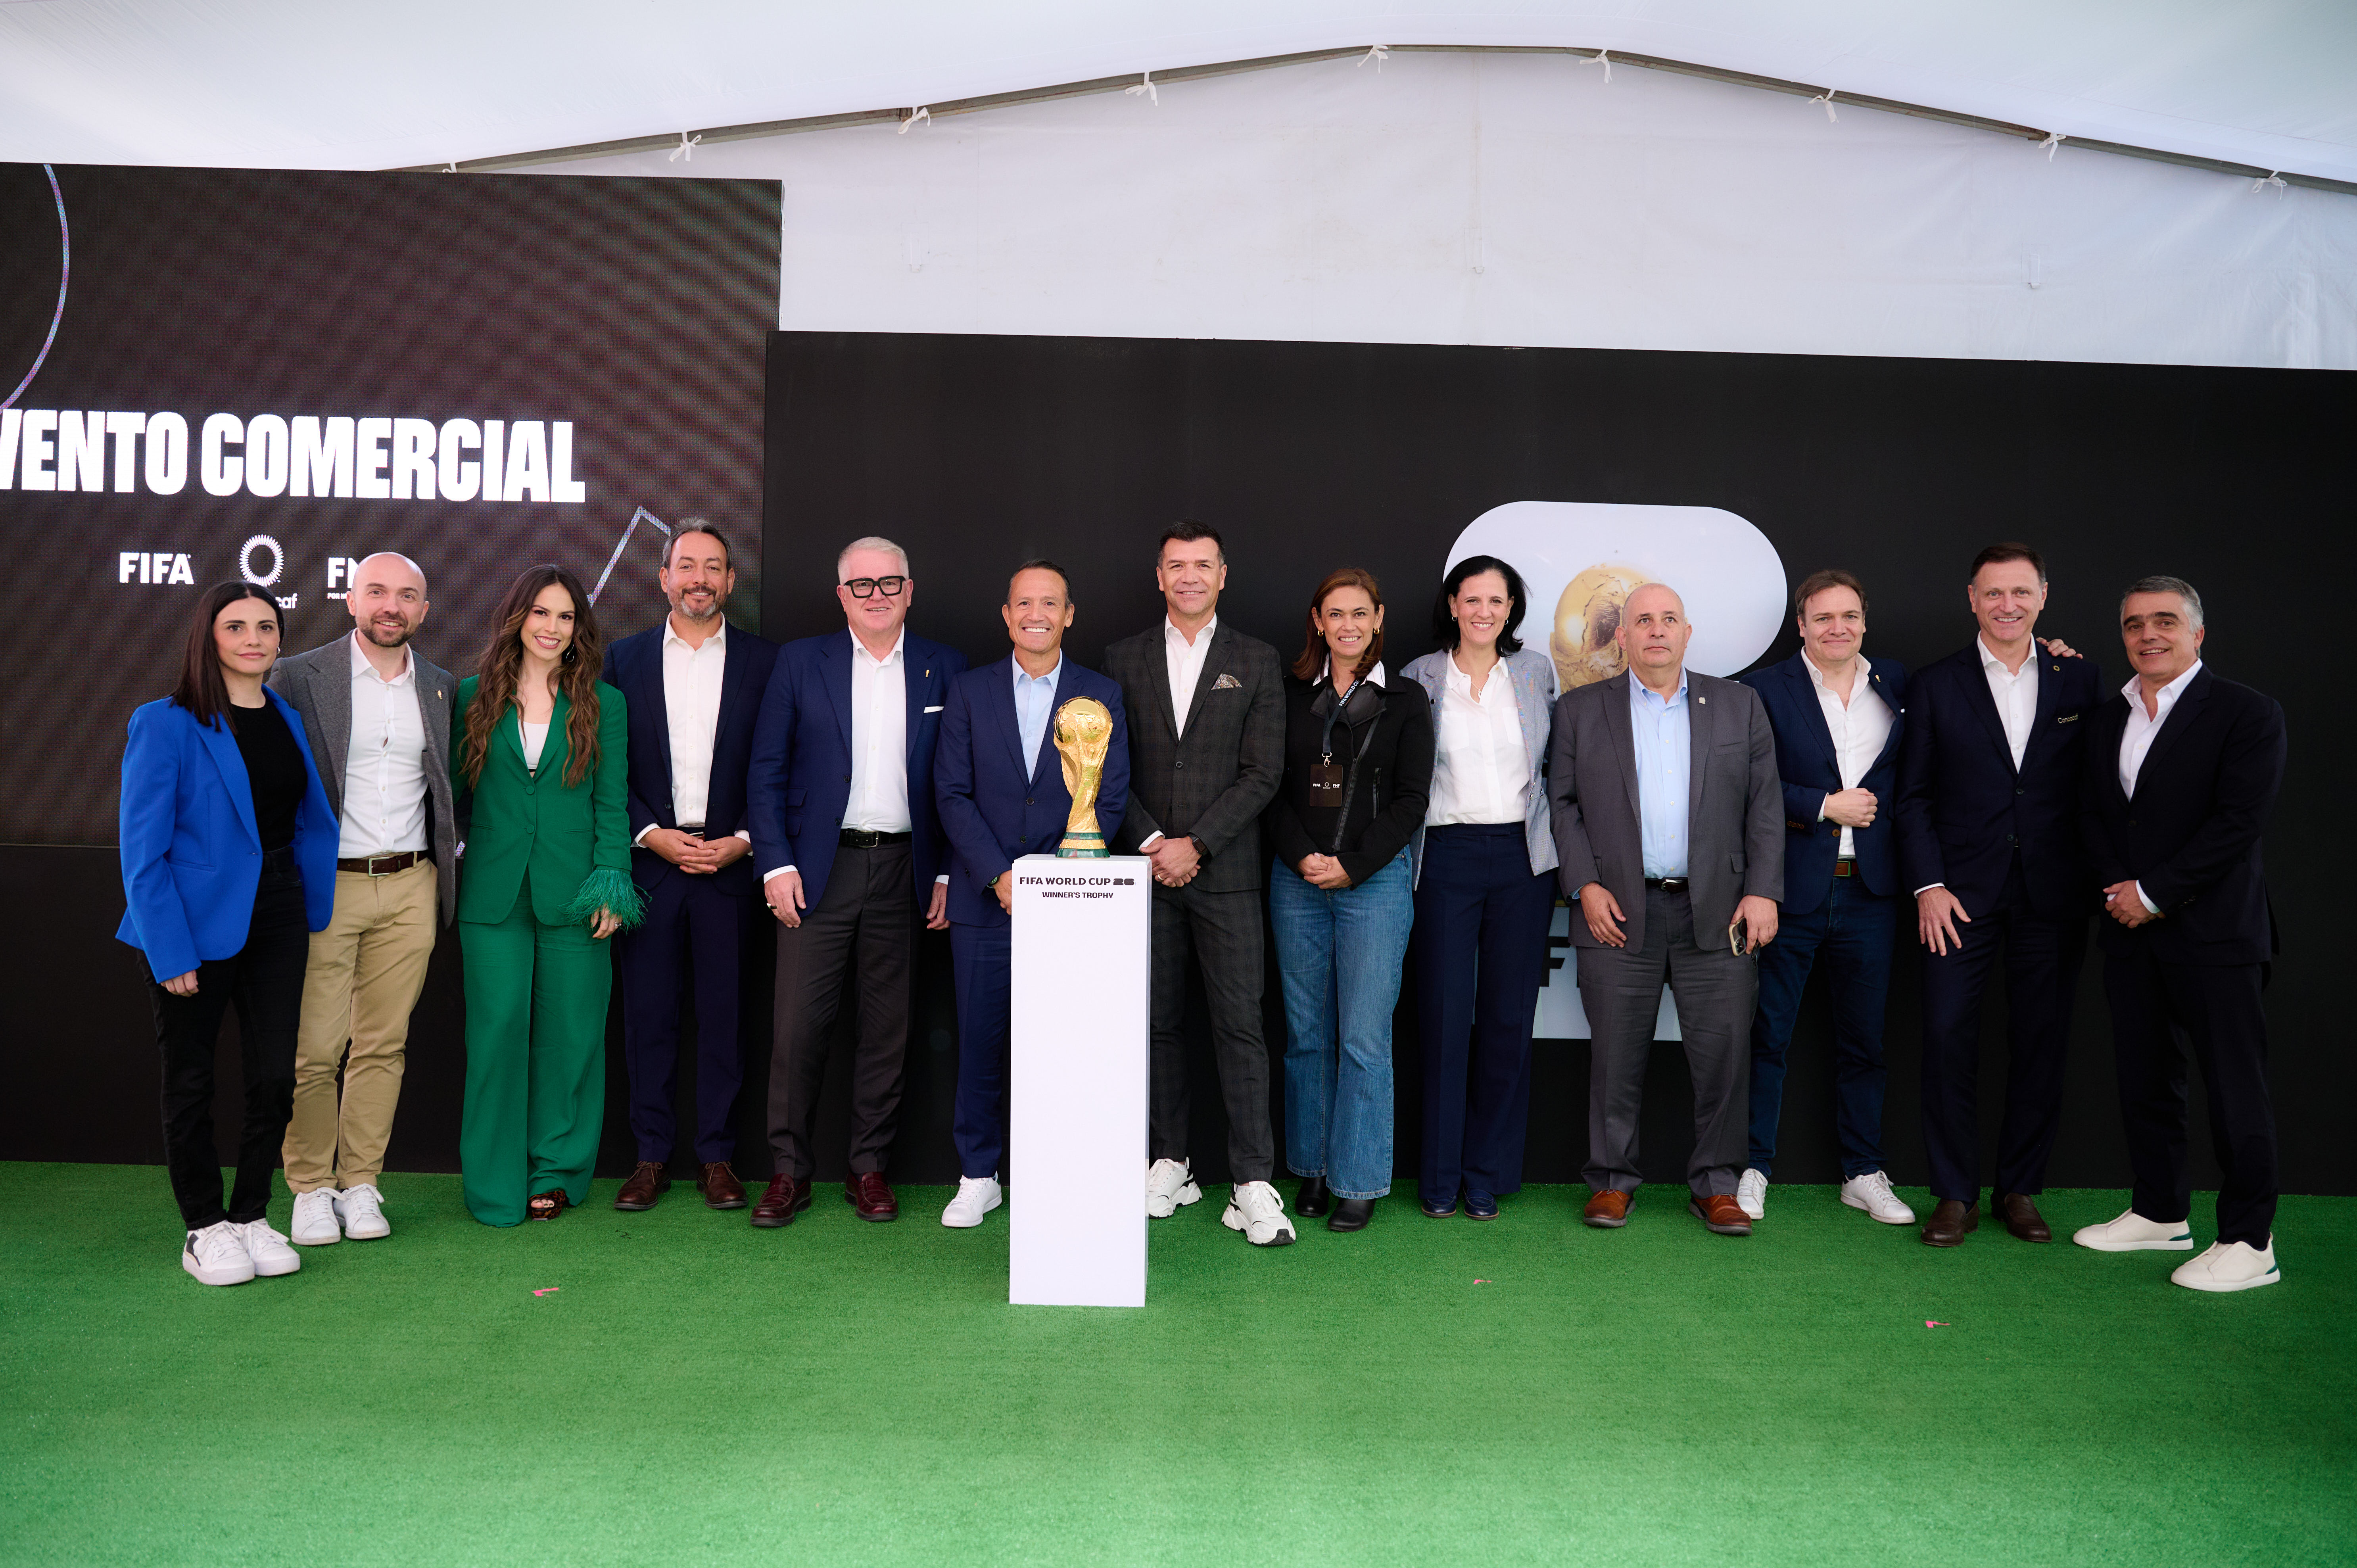 Evento empresarial de fútbol destaca oportunidades comerciales en México de cara a la Copa Mundial FIFA 26™